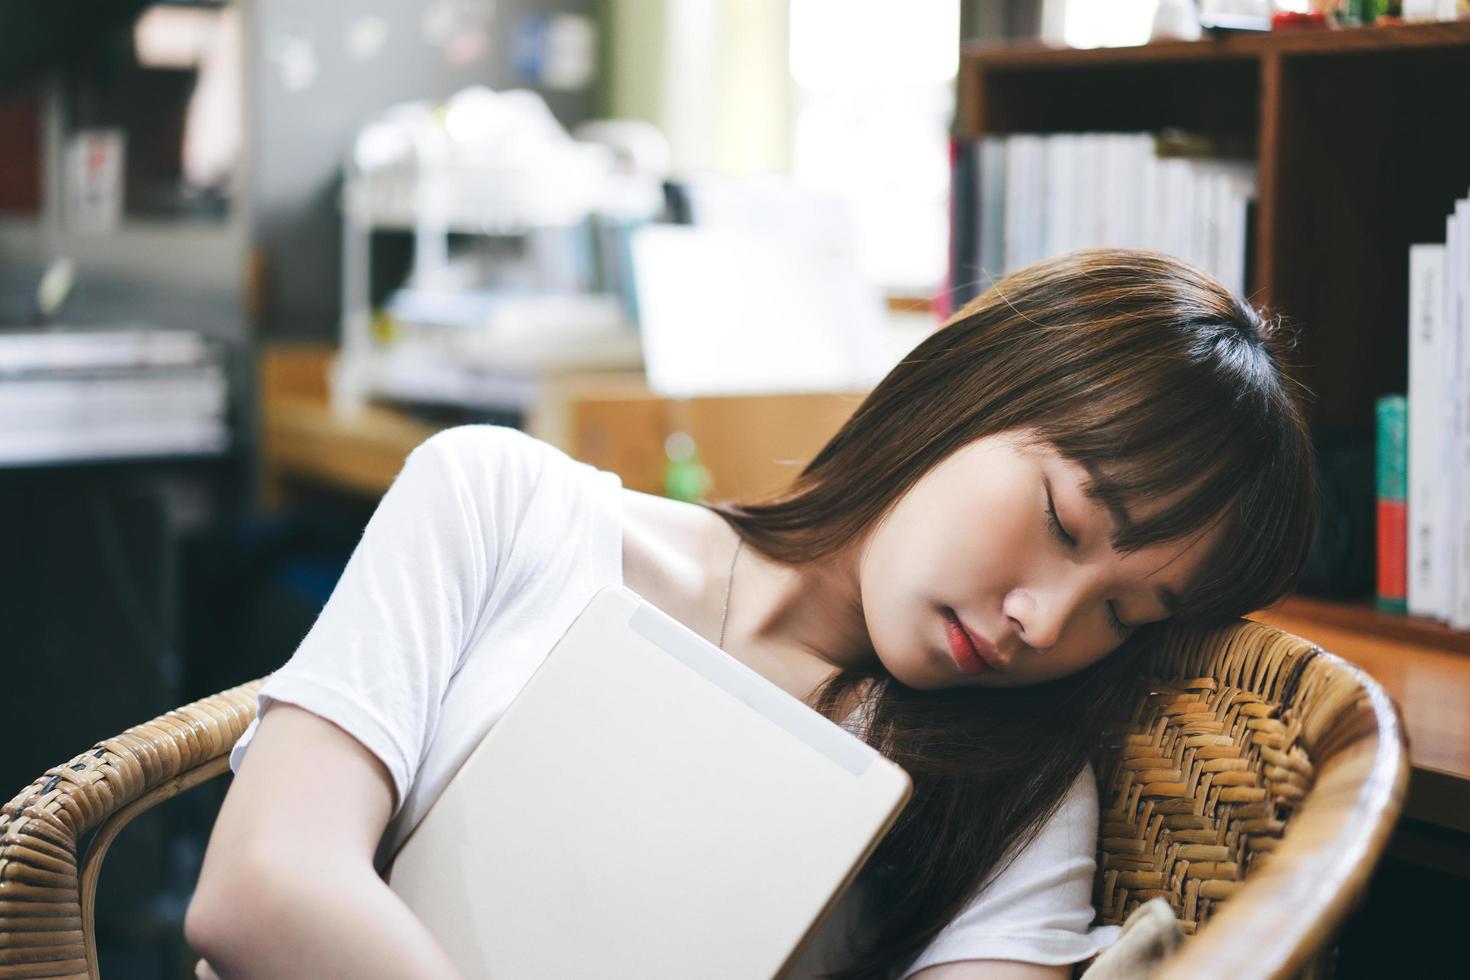 repos femme adolescente asiatique fatiguée et tenir la tablette se détendre en train de dormir. photo